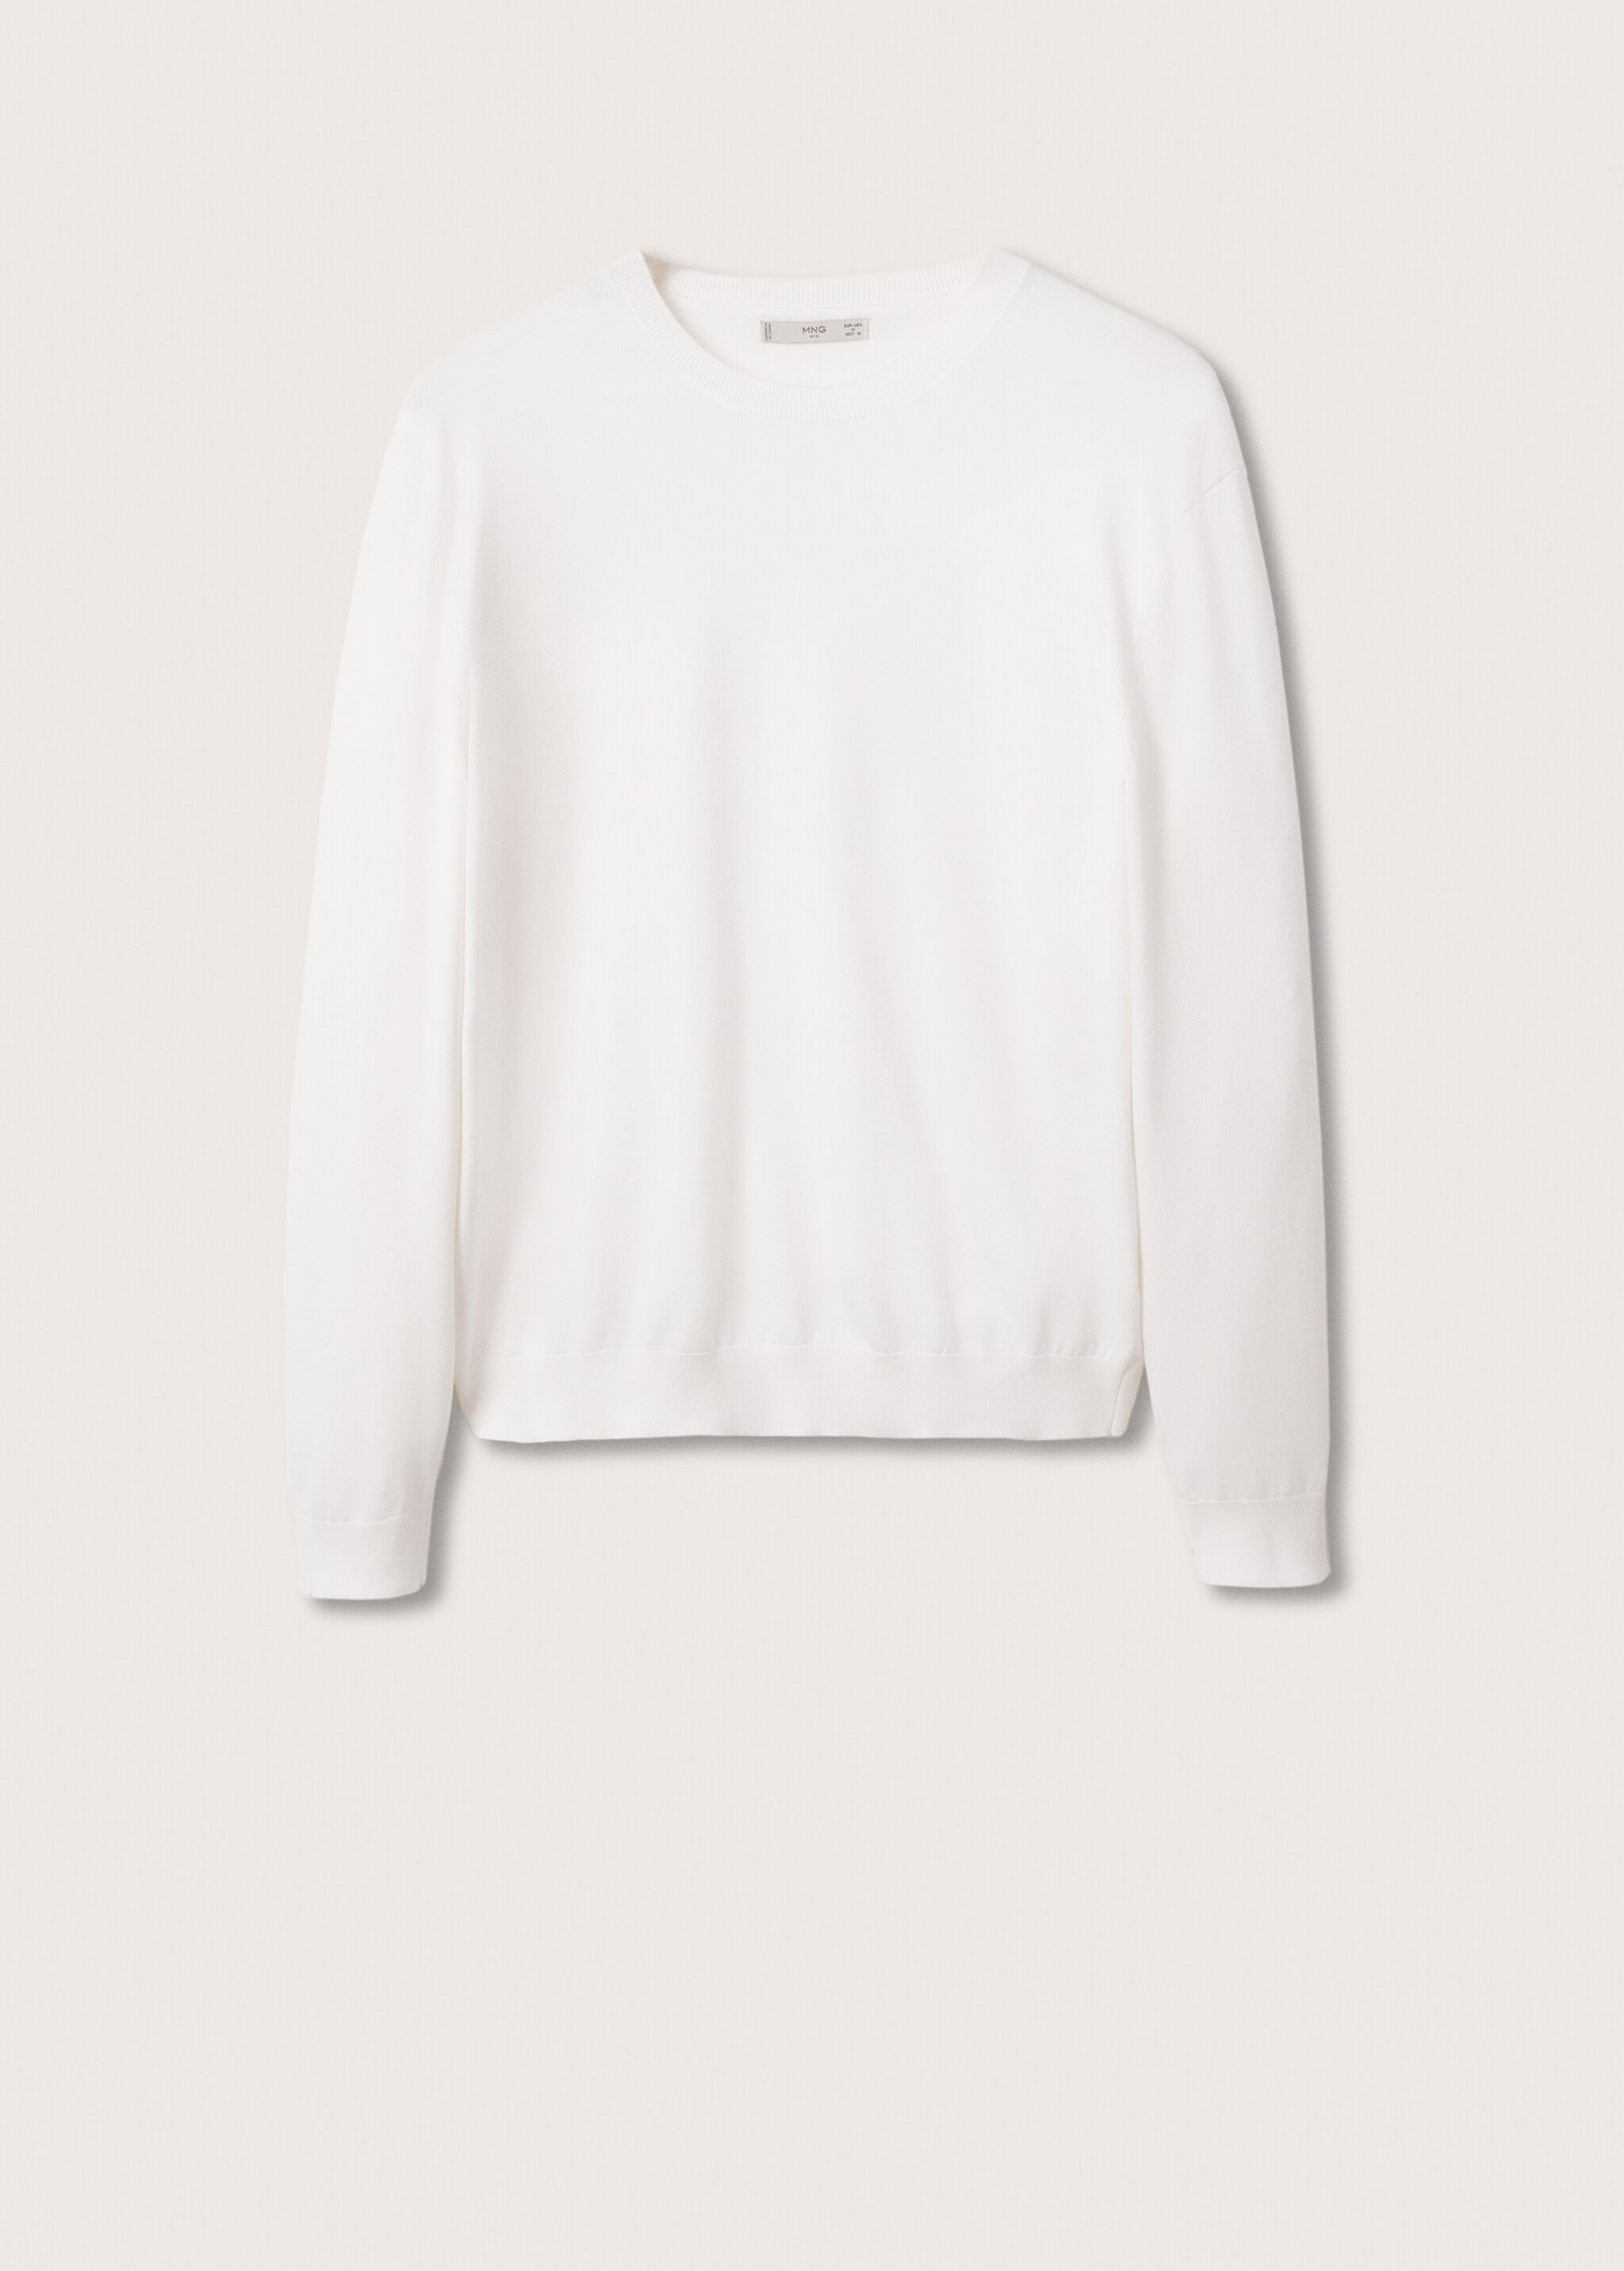 Jersey fino algodón - Artículo sin modelo